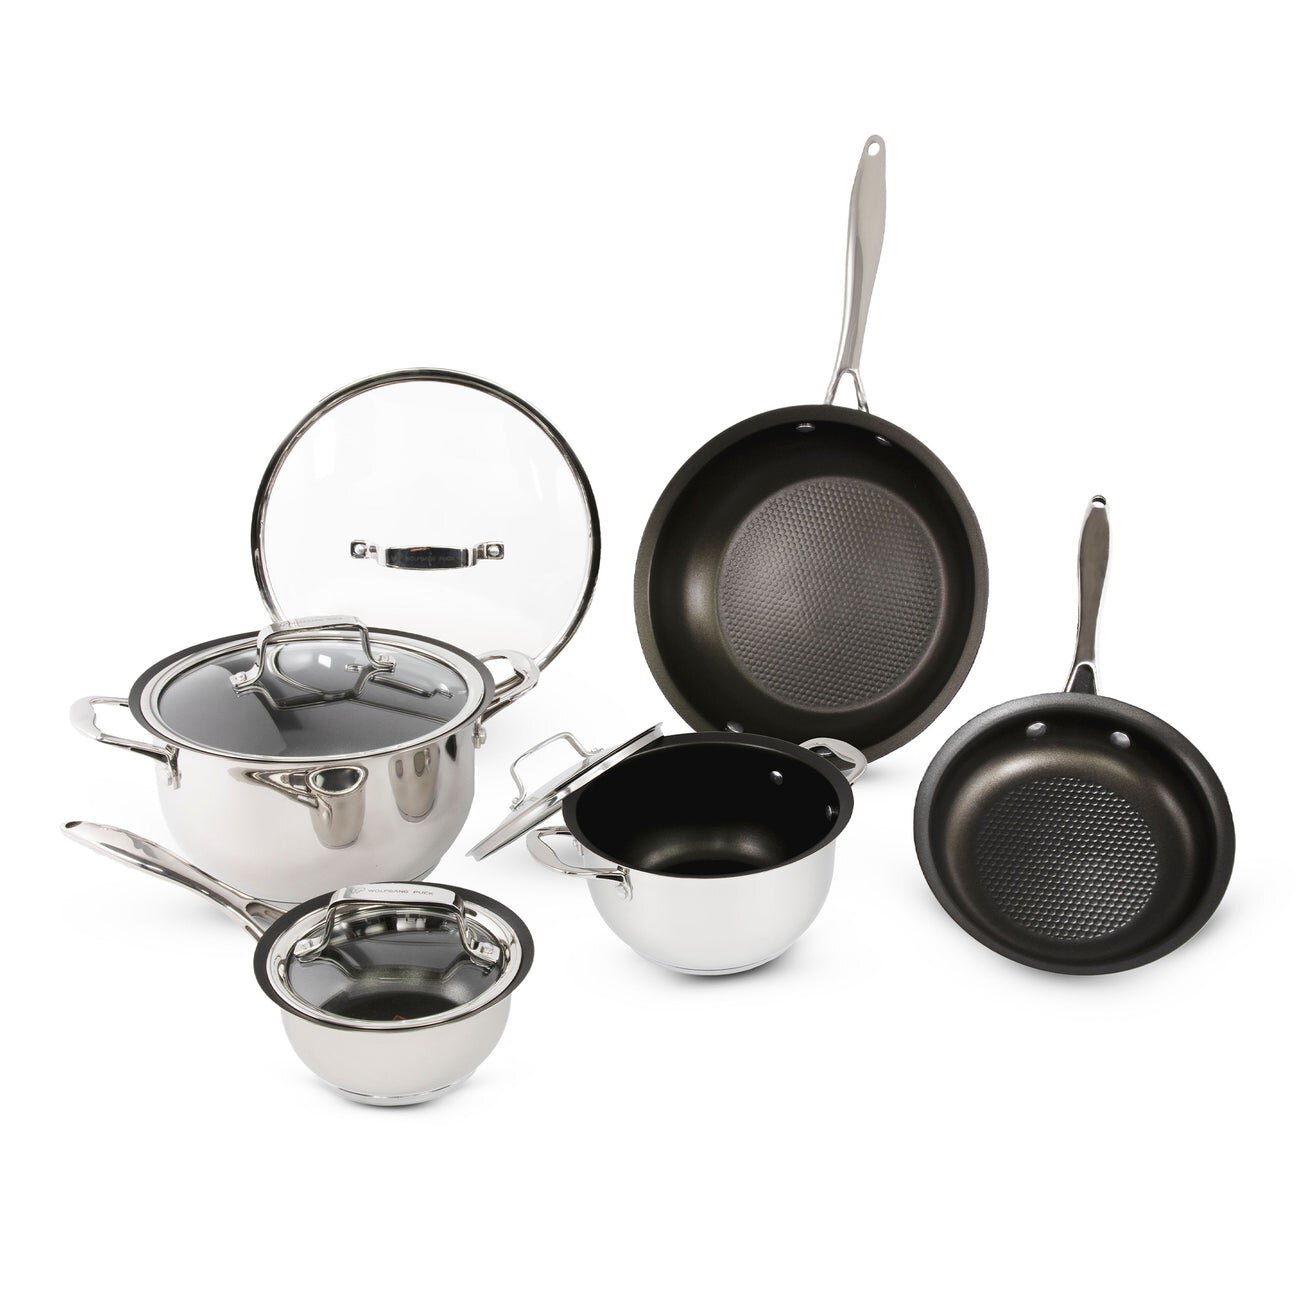 https://assets.wfcdn.com/im/85706960/compr-r85/1841/184117615/9-piece-non-stick-stainless-steel-cookware-set.jpg